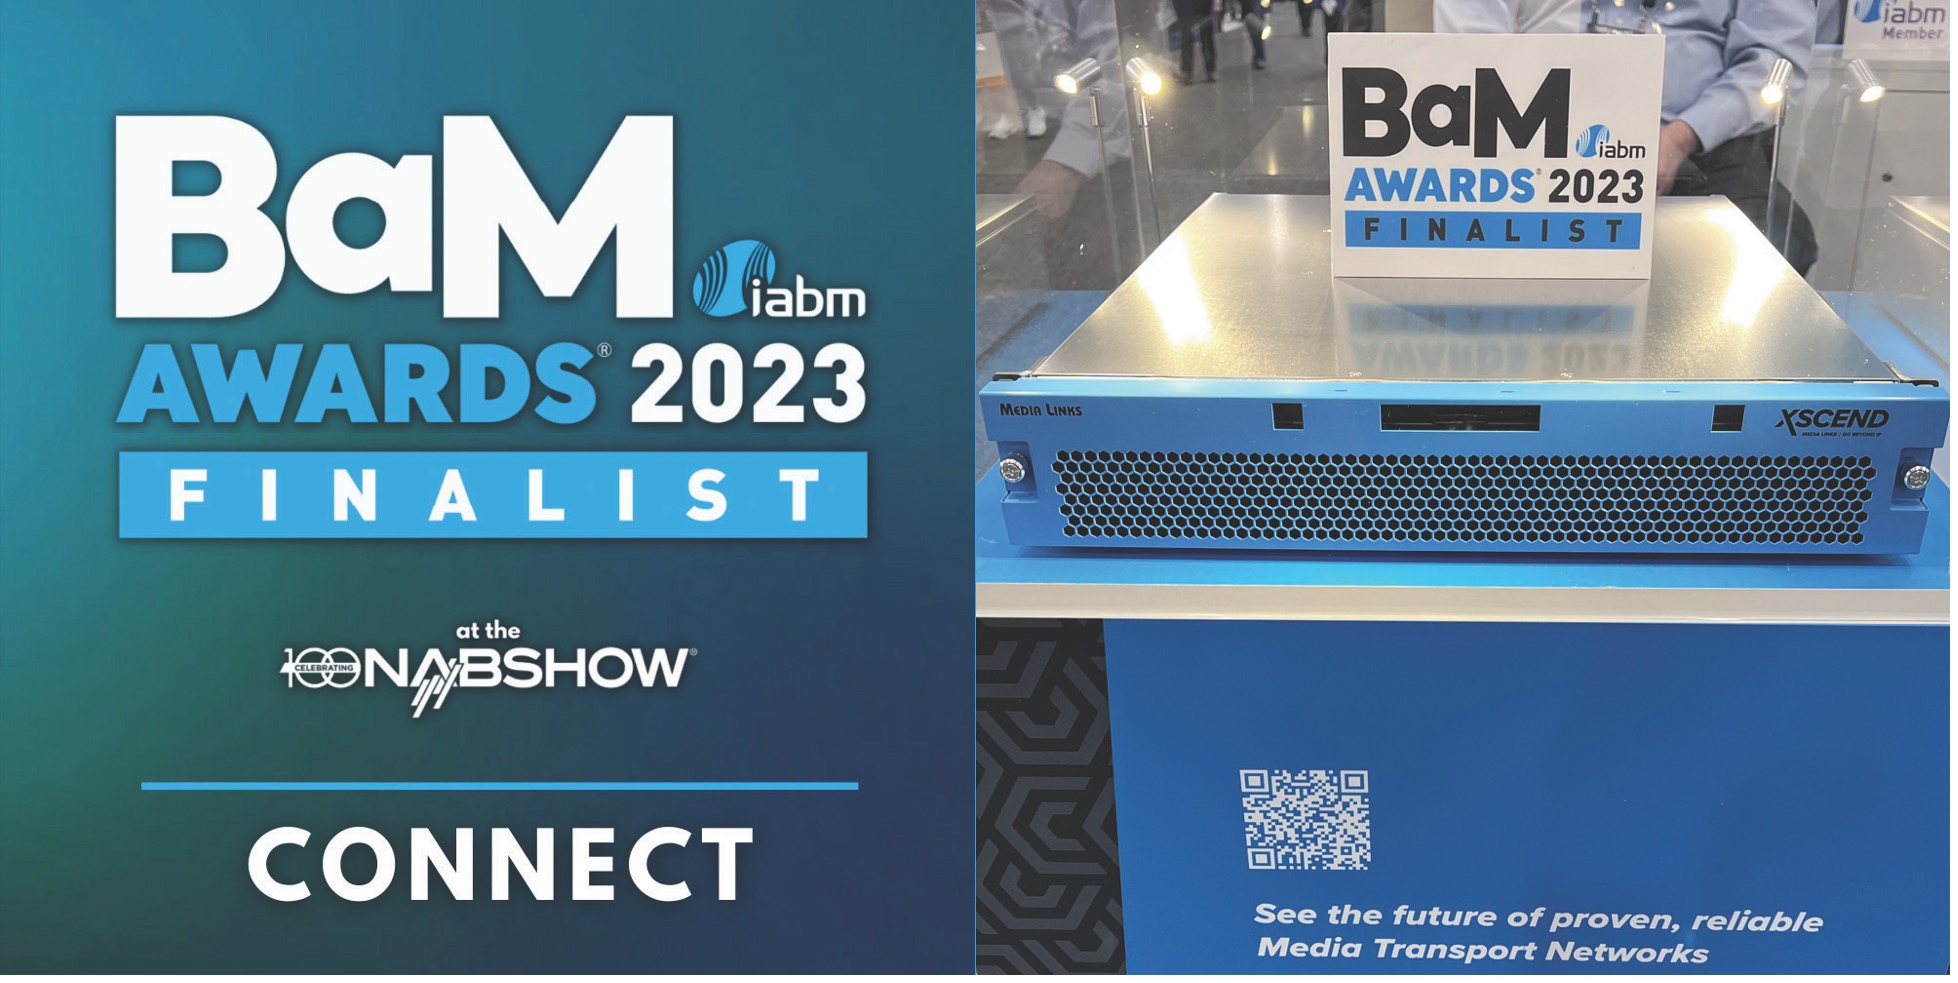 BaM Awards 2023 Finalist